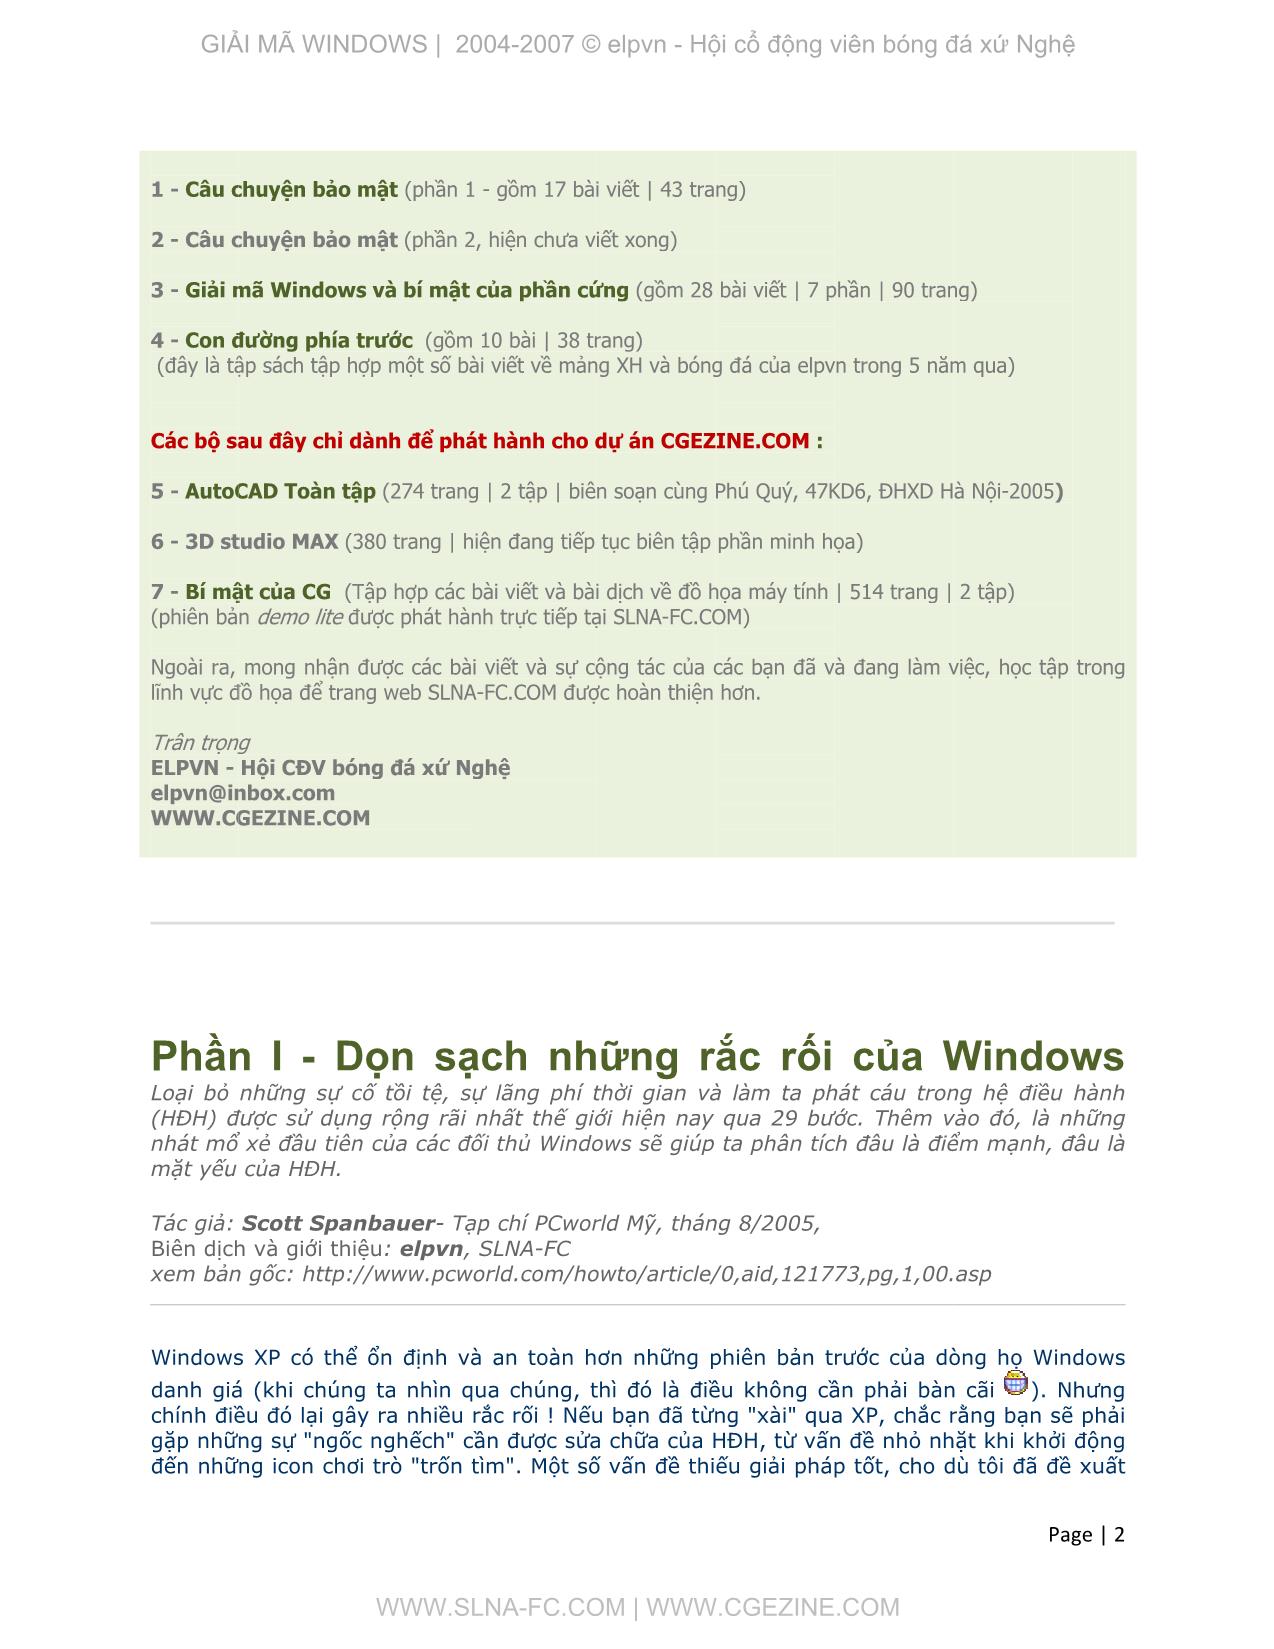 Giải mã Windows - Bí mật của phần cứng trang 2